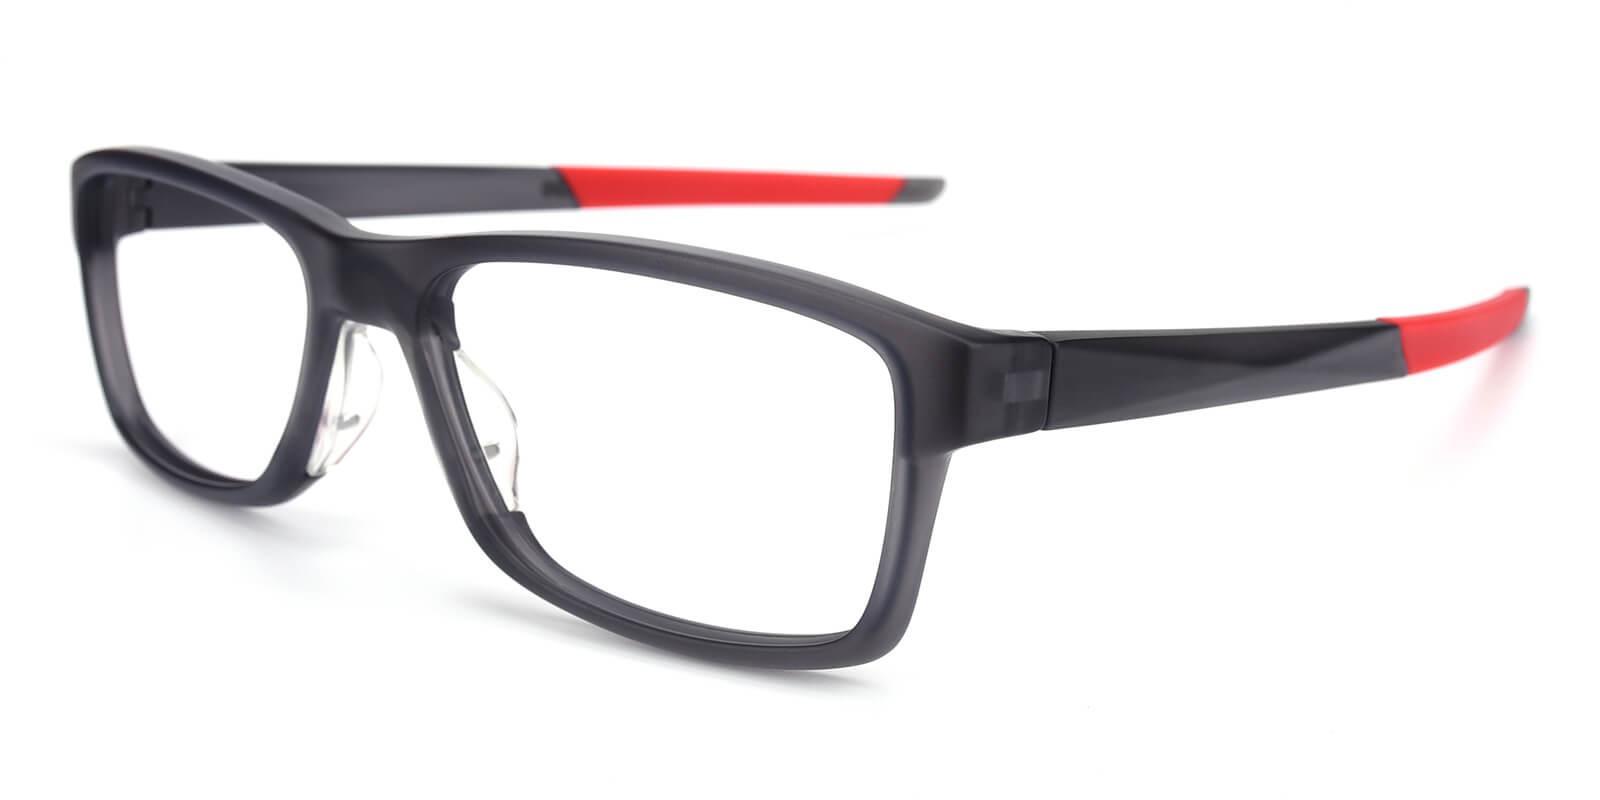 Cohen Red TR SportsGlasses , UniversalBridgeFit Frames from ABBE Glasses